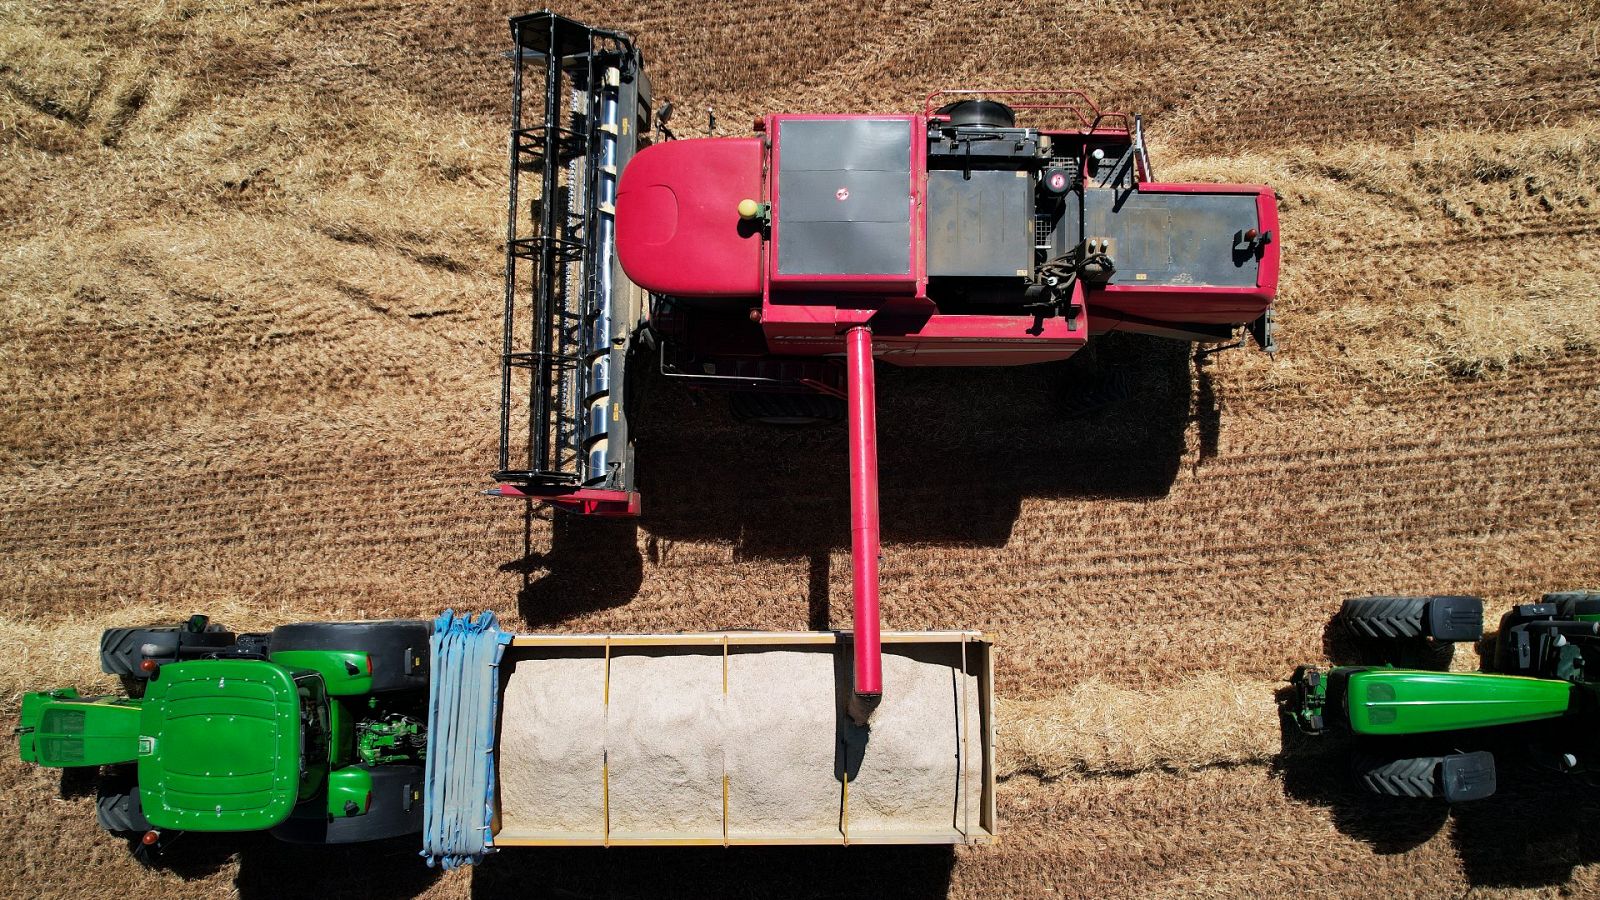 Imagen tomada desde un dron de una máquina cosechadora